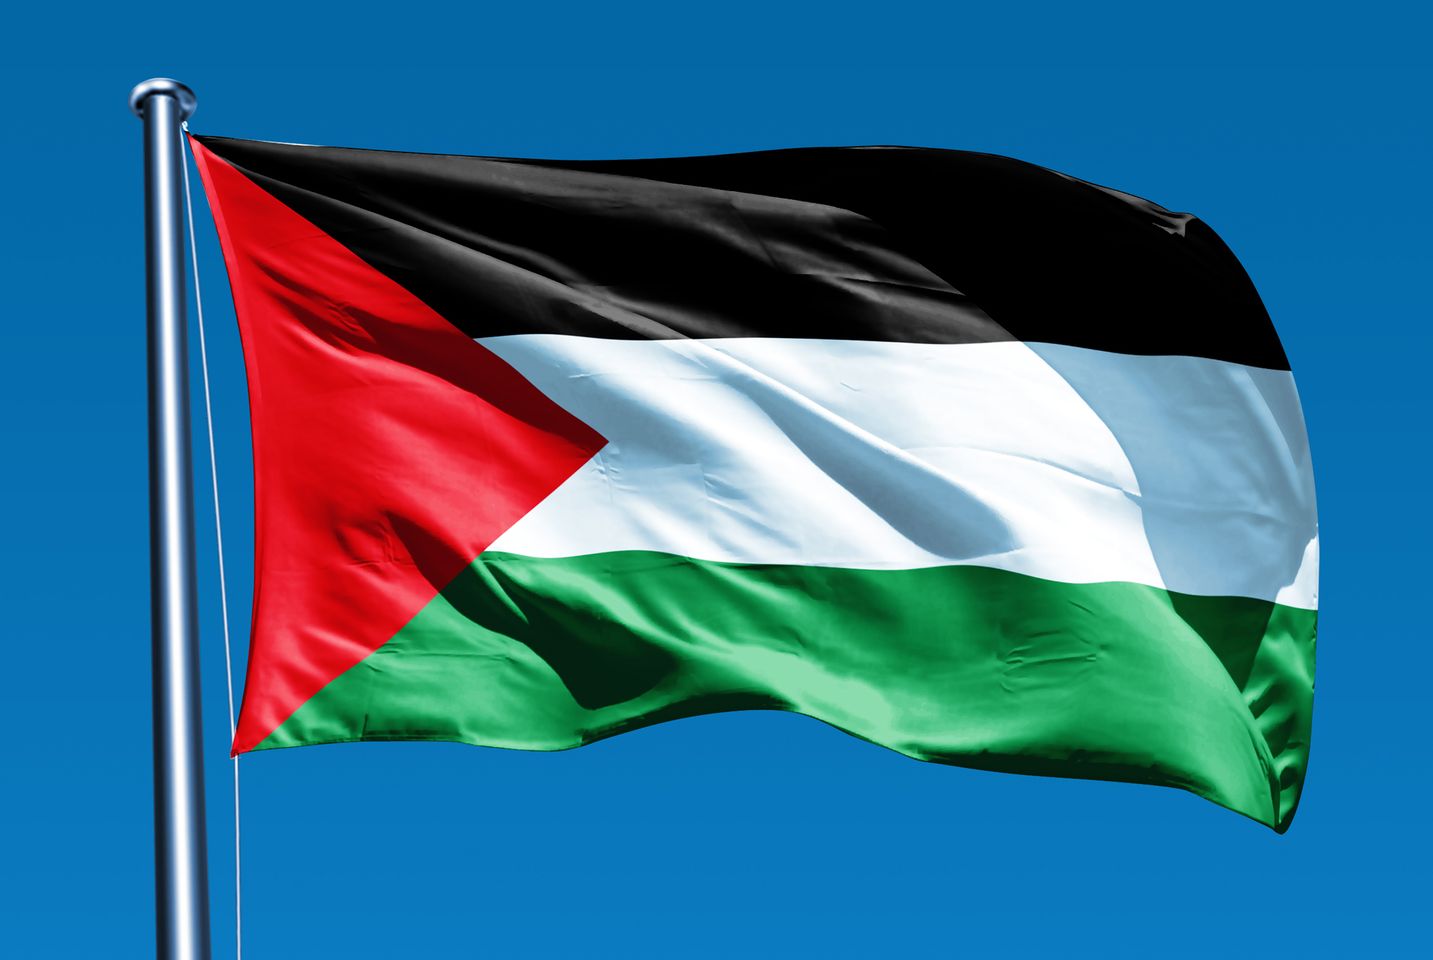 العلم الفلسطيني.. رمز السيادة وعنوان الهوية الوطنية